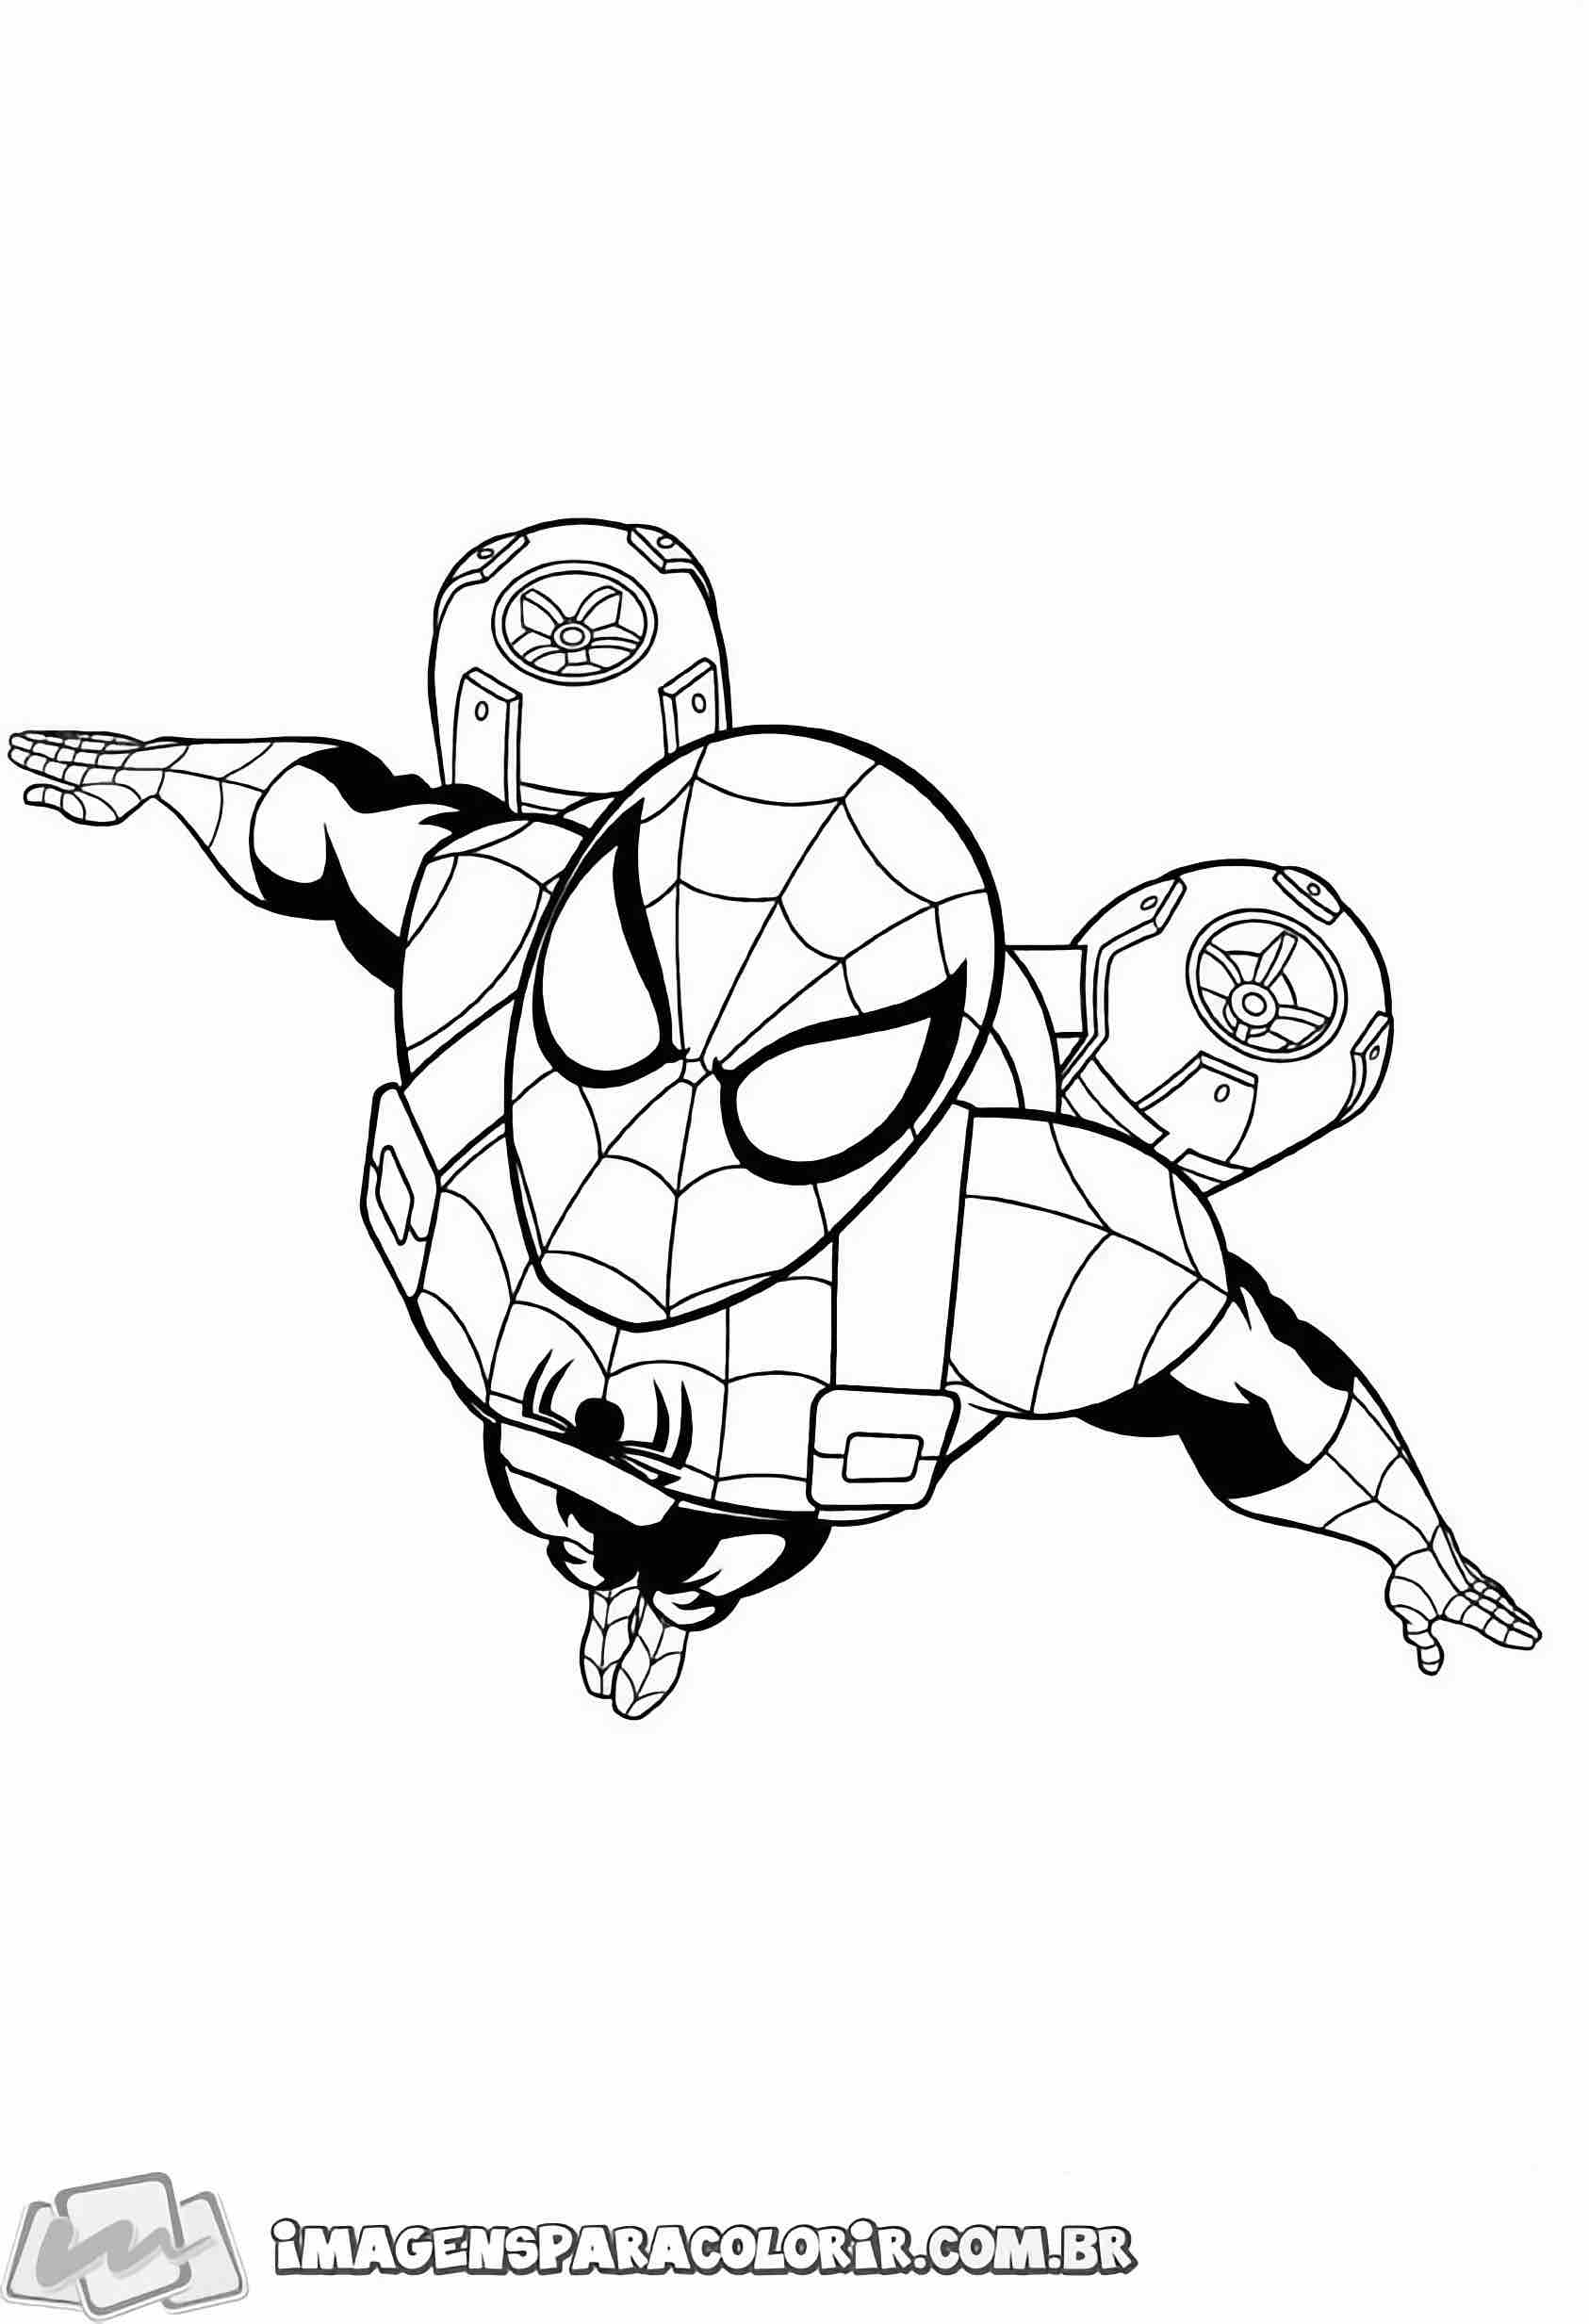 Homem aranha spider man desenho para colorir artes gráficas png